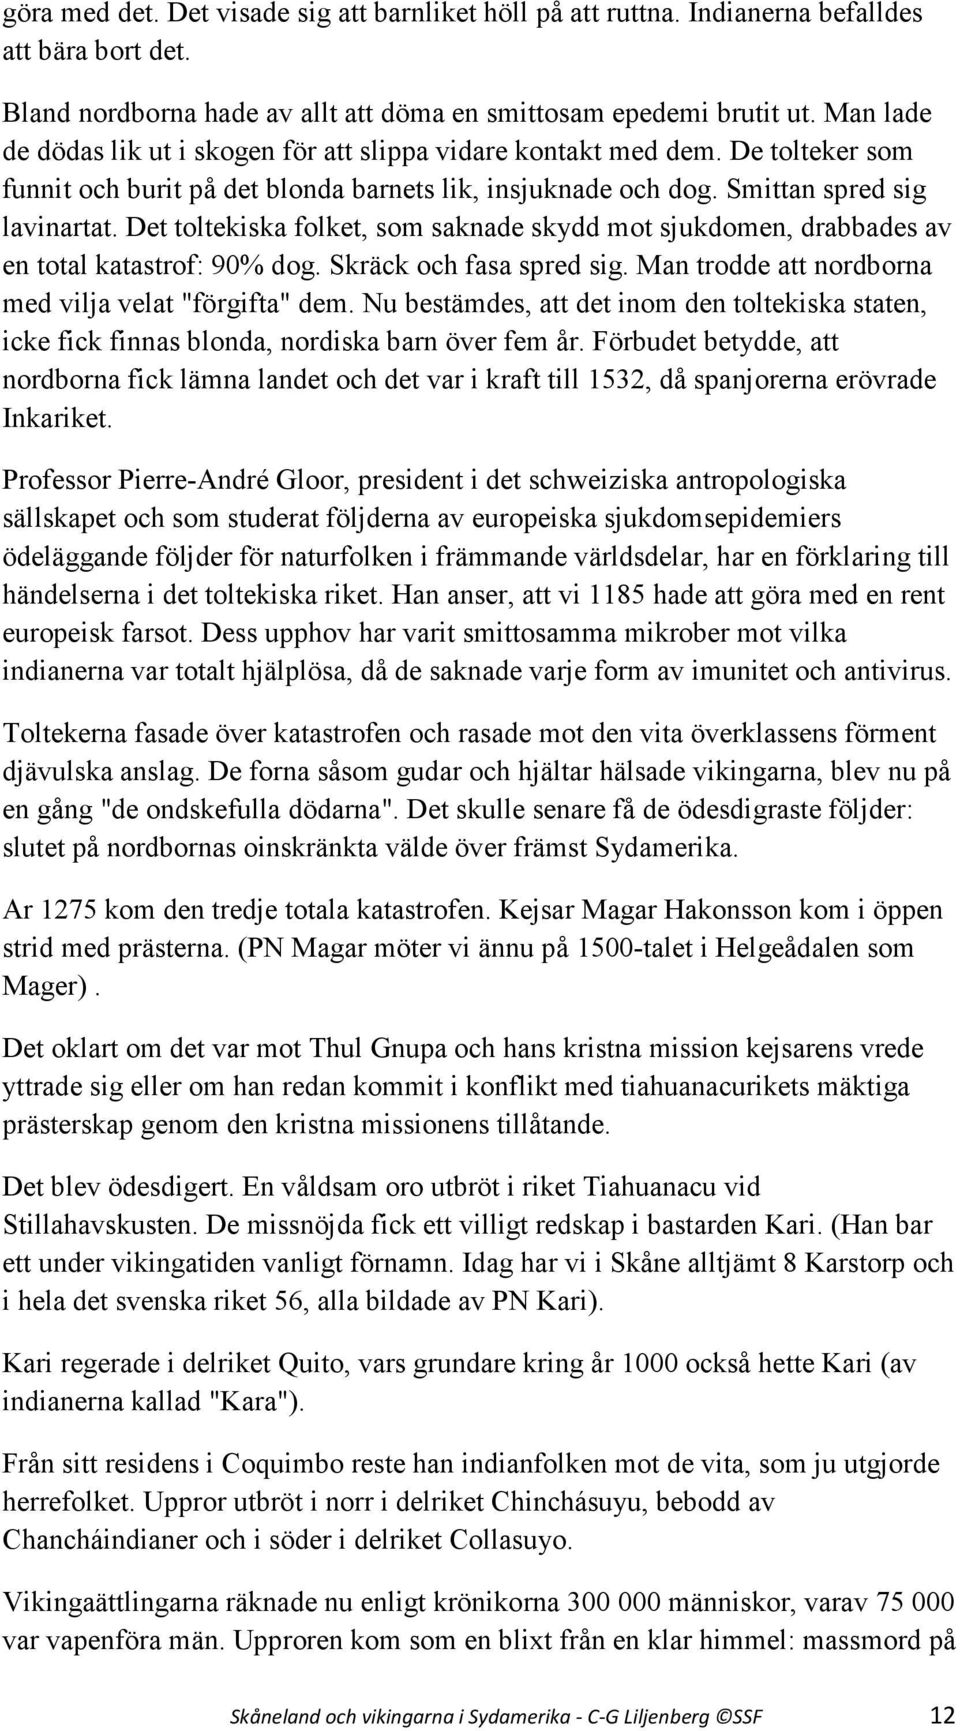 Skåneland och vikingarna i Sydamerika - PDF Free Download